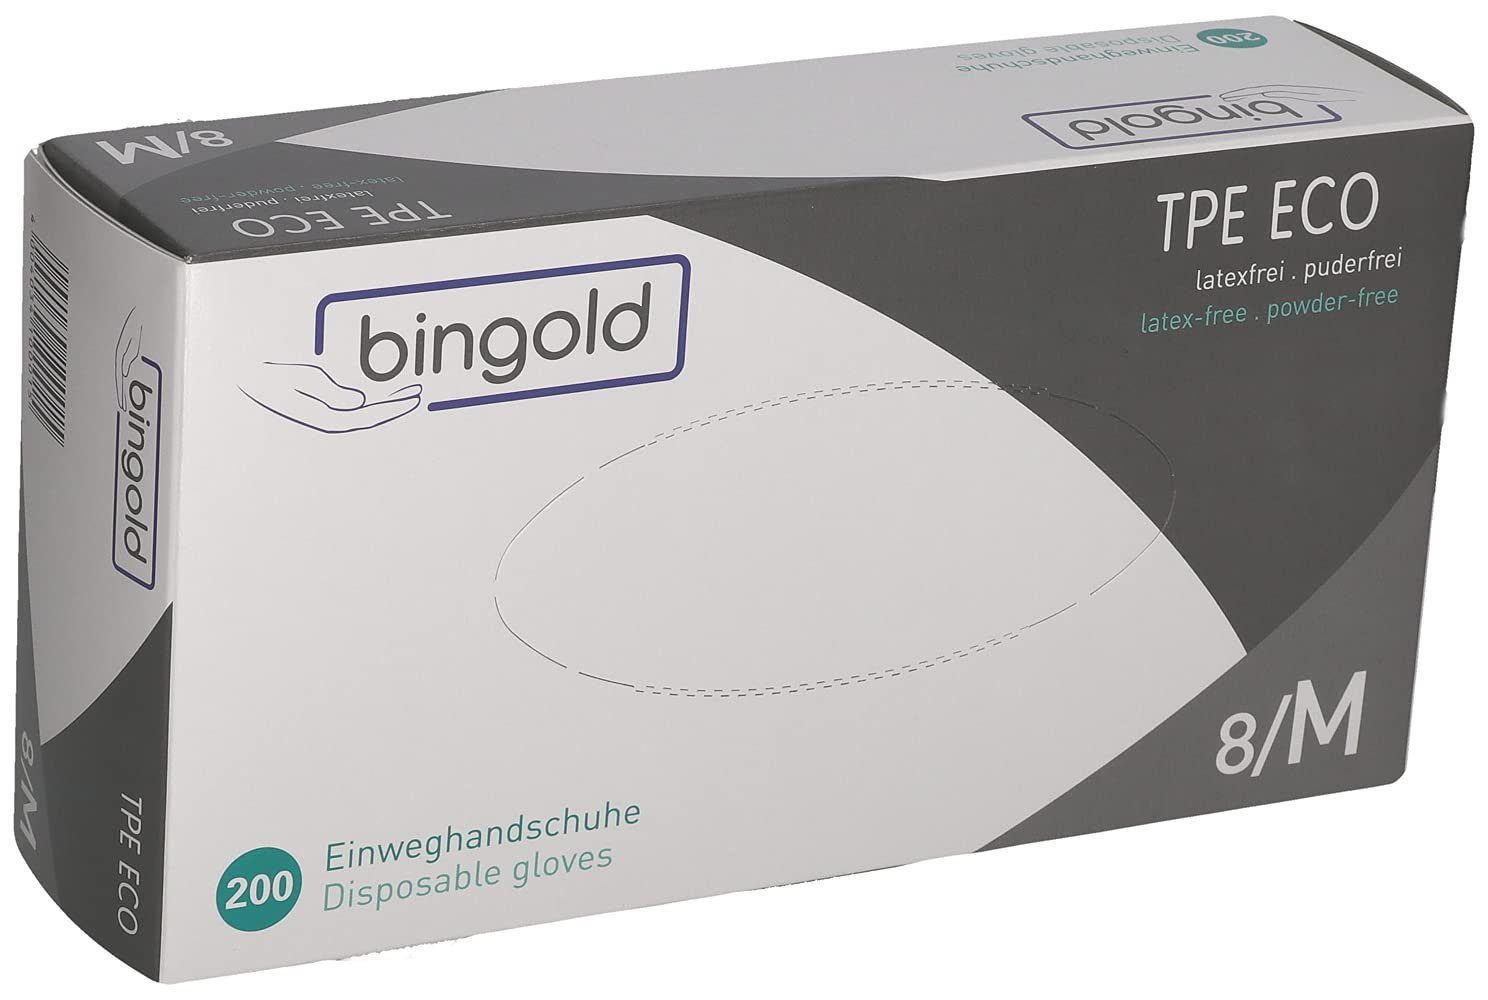 Bingold Einweghandschuhe Bingold TPE ECO - Einweghandschuhe - transparent -